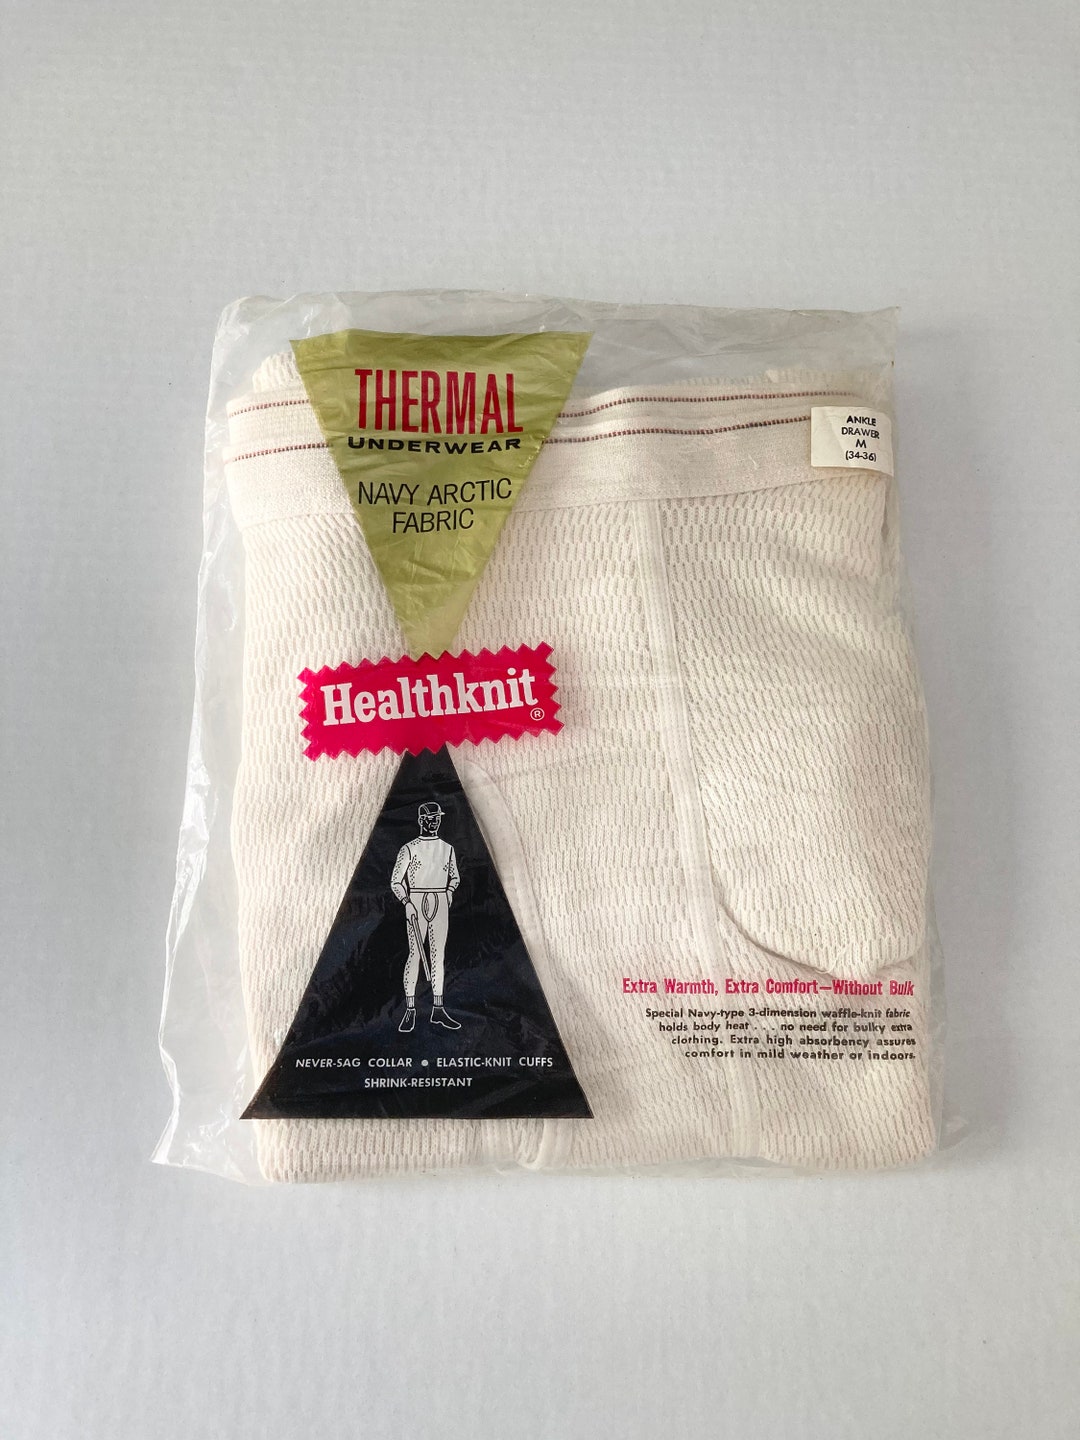 Vintage NOS Healthknit Thermal Underwear M 34-36 - Etsy